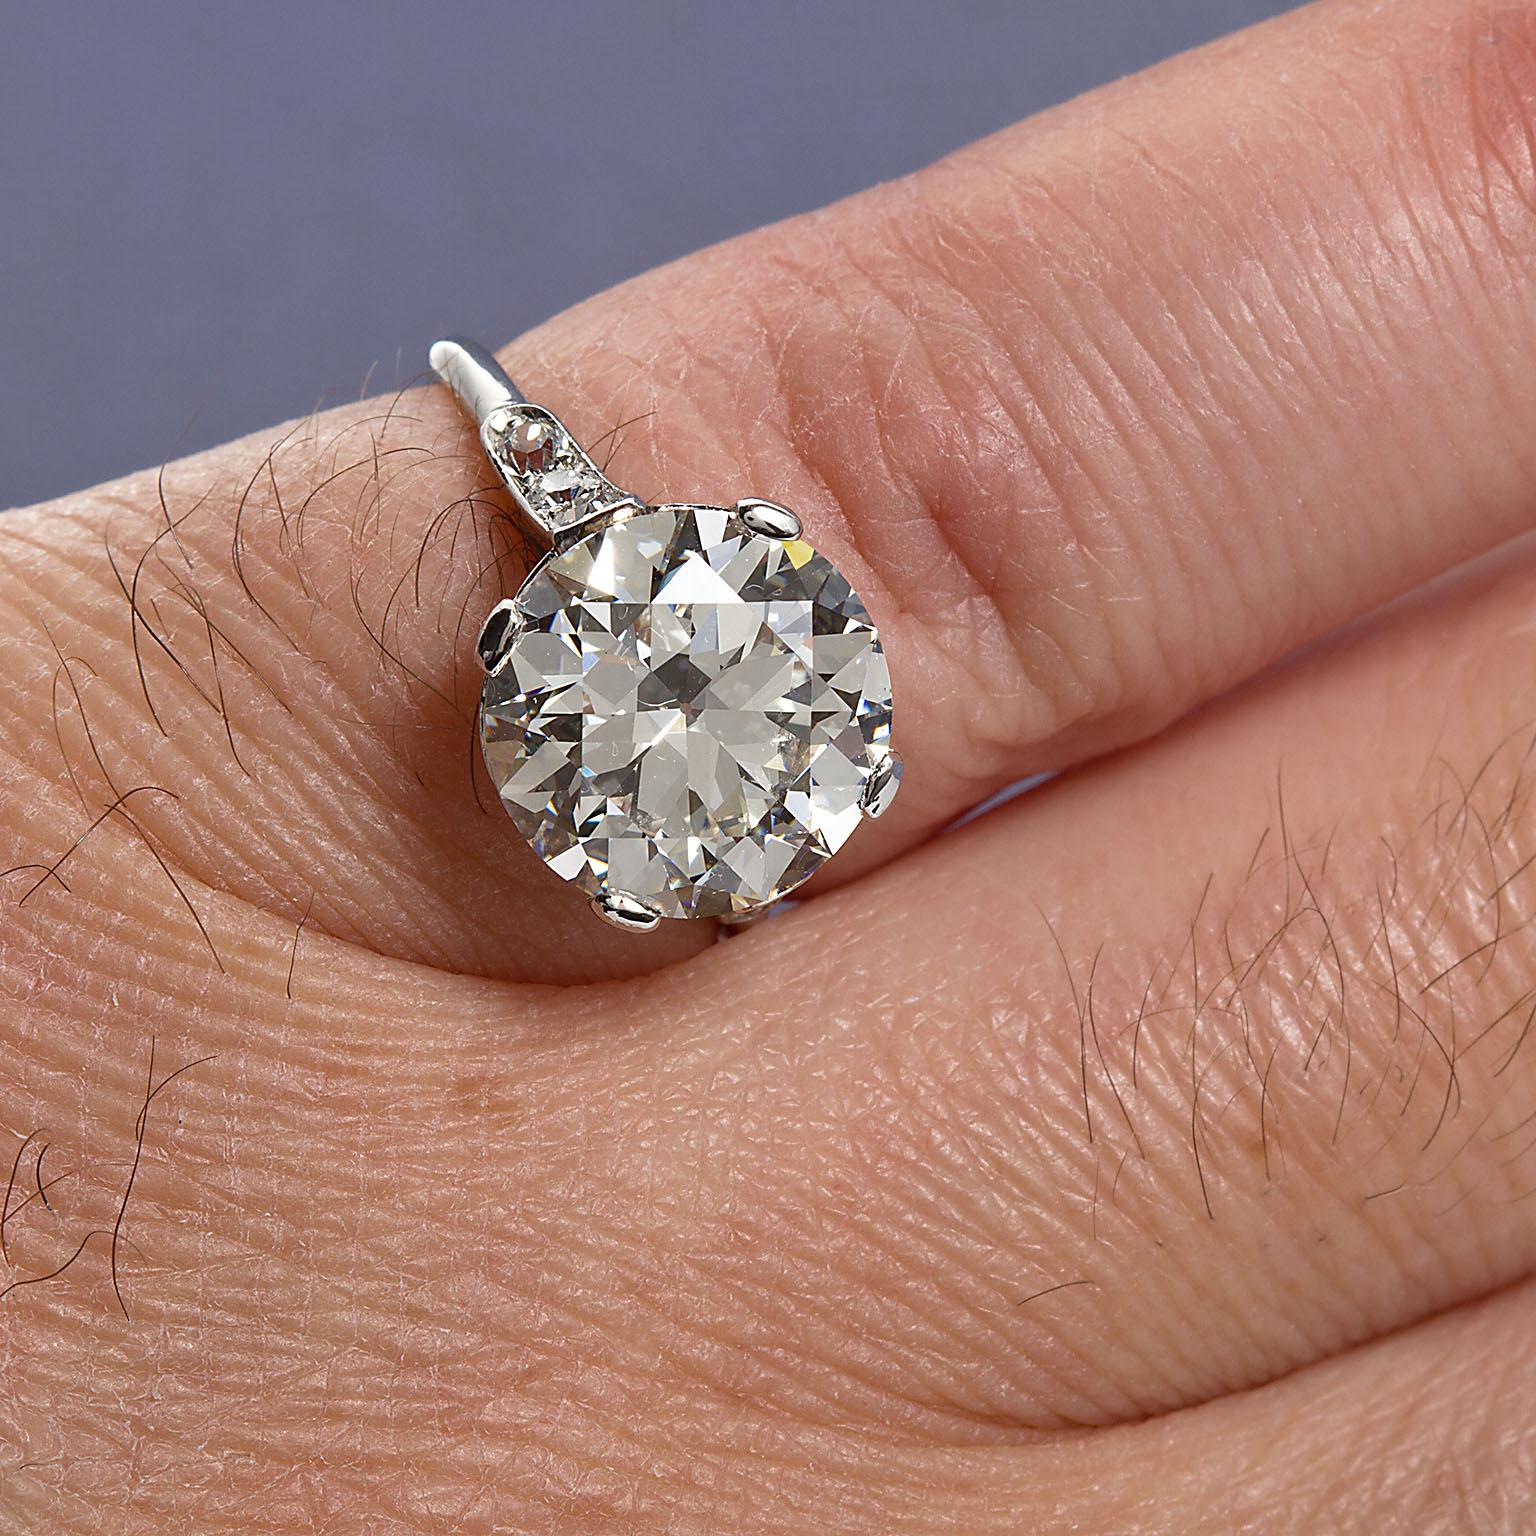 4 carat cartier diamond ring price